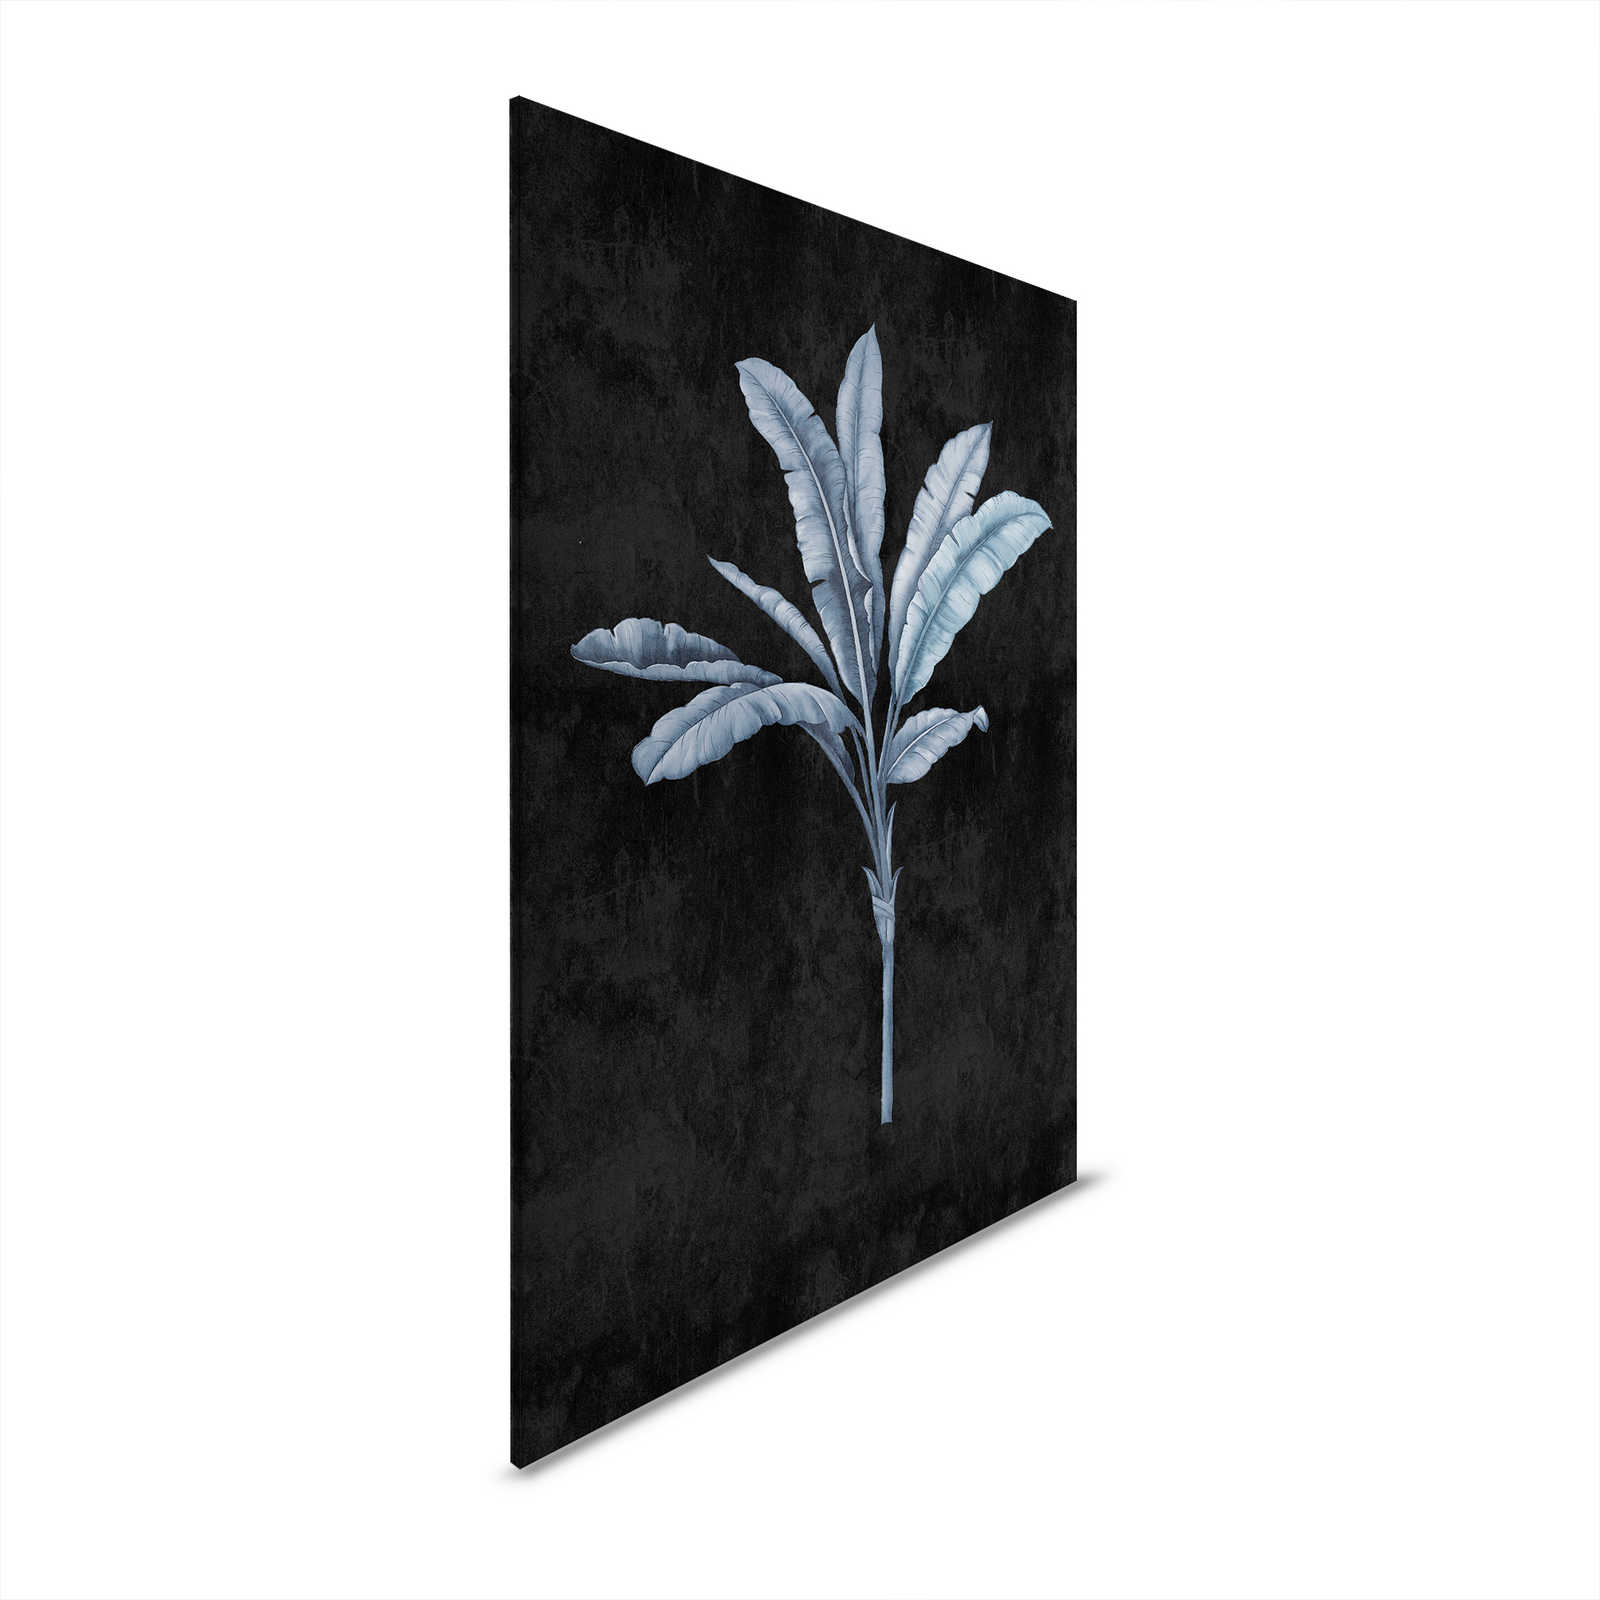 Fiji 2 - Quadro su tela nero con motivo di palme blu e grigio - 0,80 m x 1,20 m
